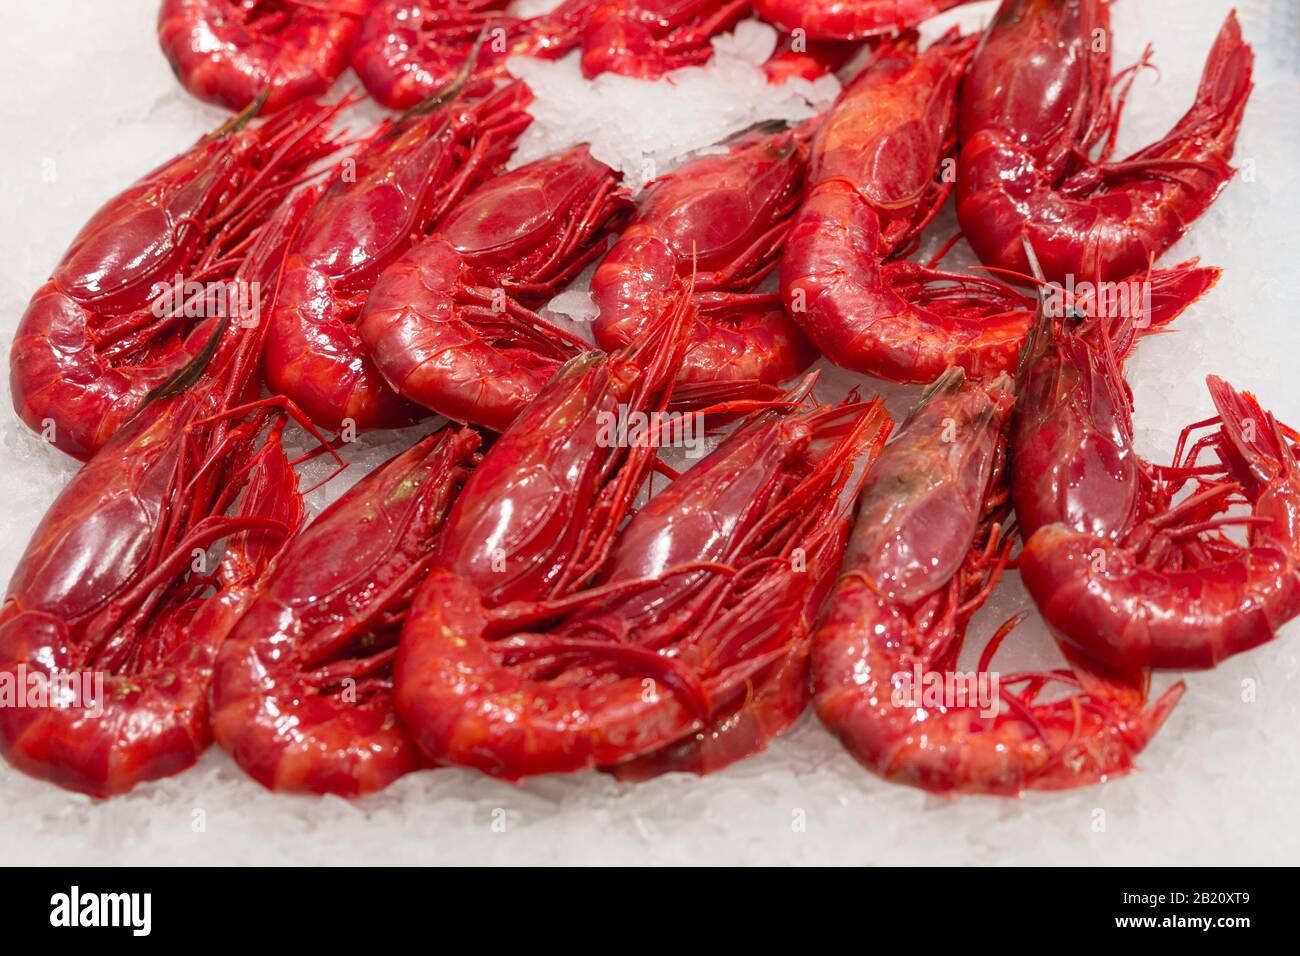 Photo de stock d'un gros tas de crevettes rouges sur une base de glace dans un marché de décrochage Banque D'Images